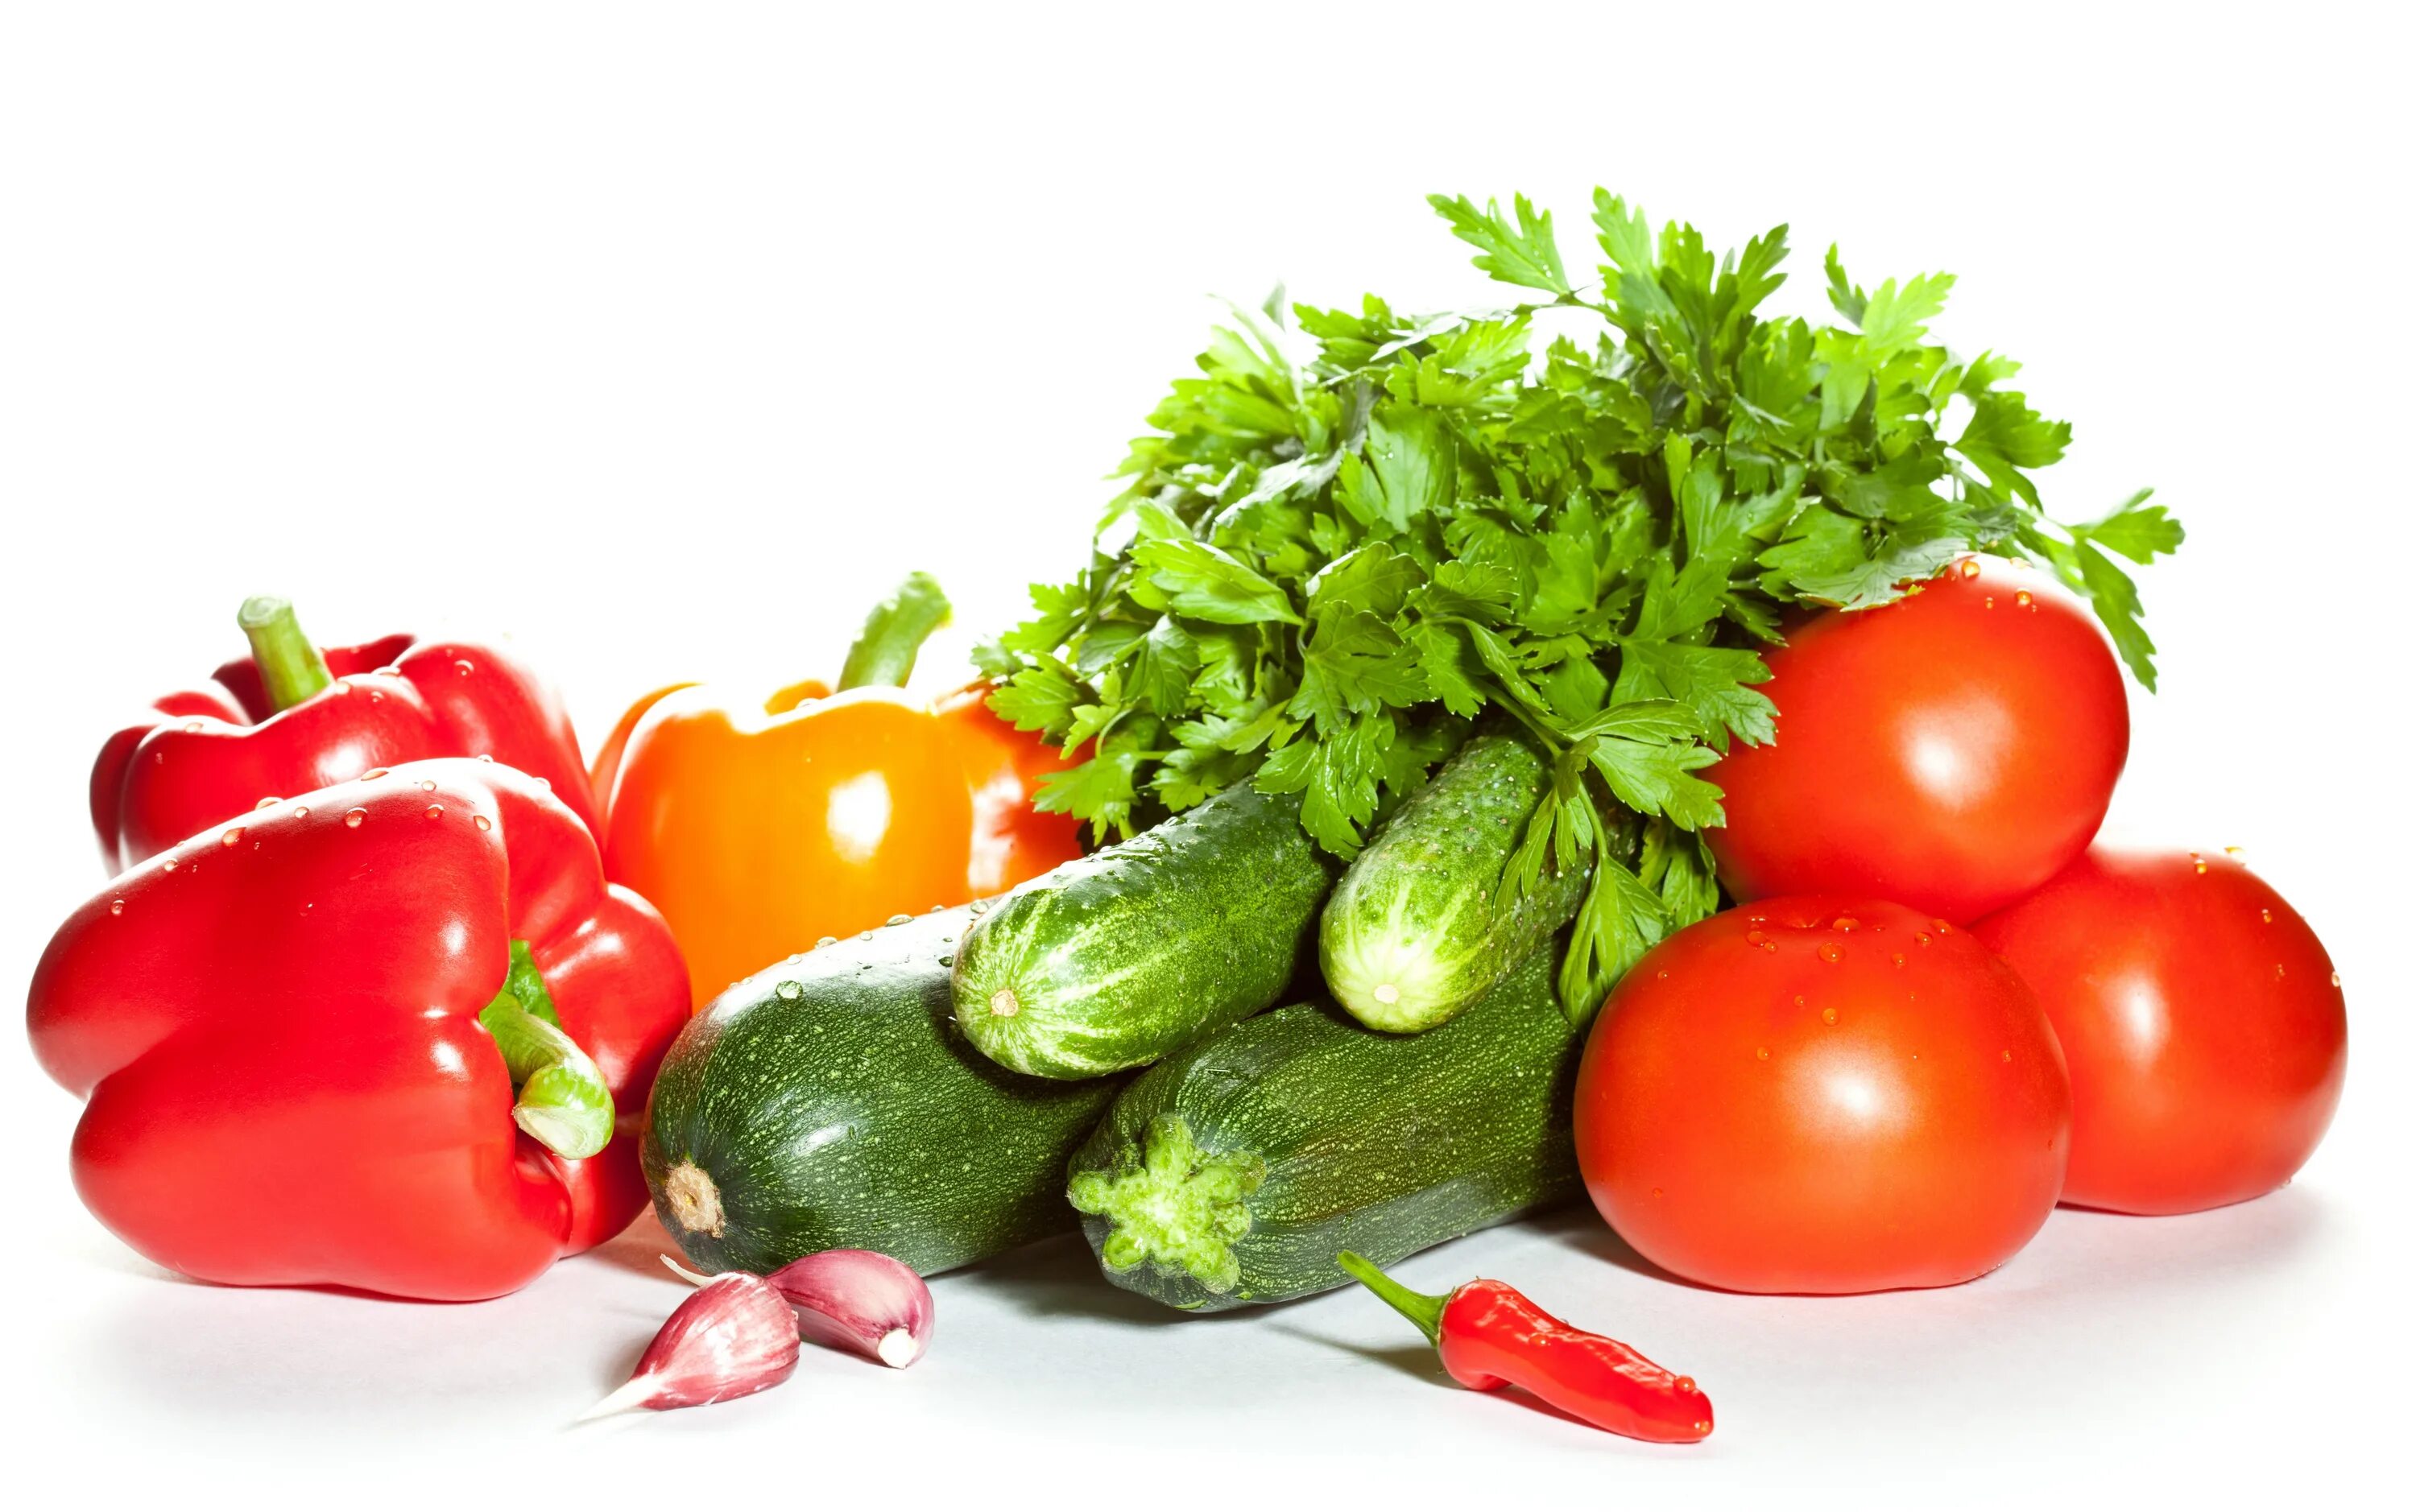 Огурцы и помидоры в холодильнике. Огурцы и помидоры. Свежие овощи и зелень. Овощи на белом фоне. Томаты огурцы зелень.